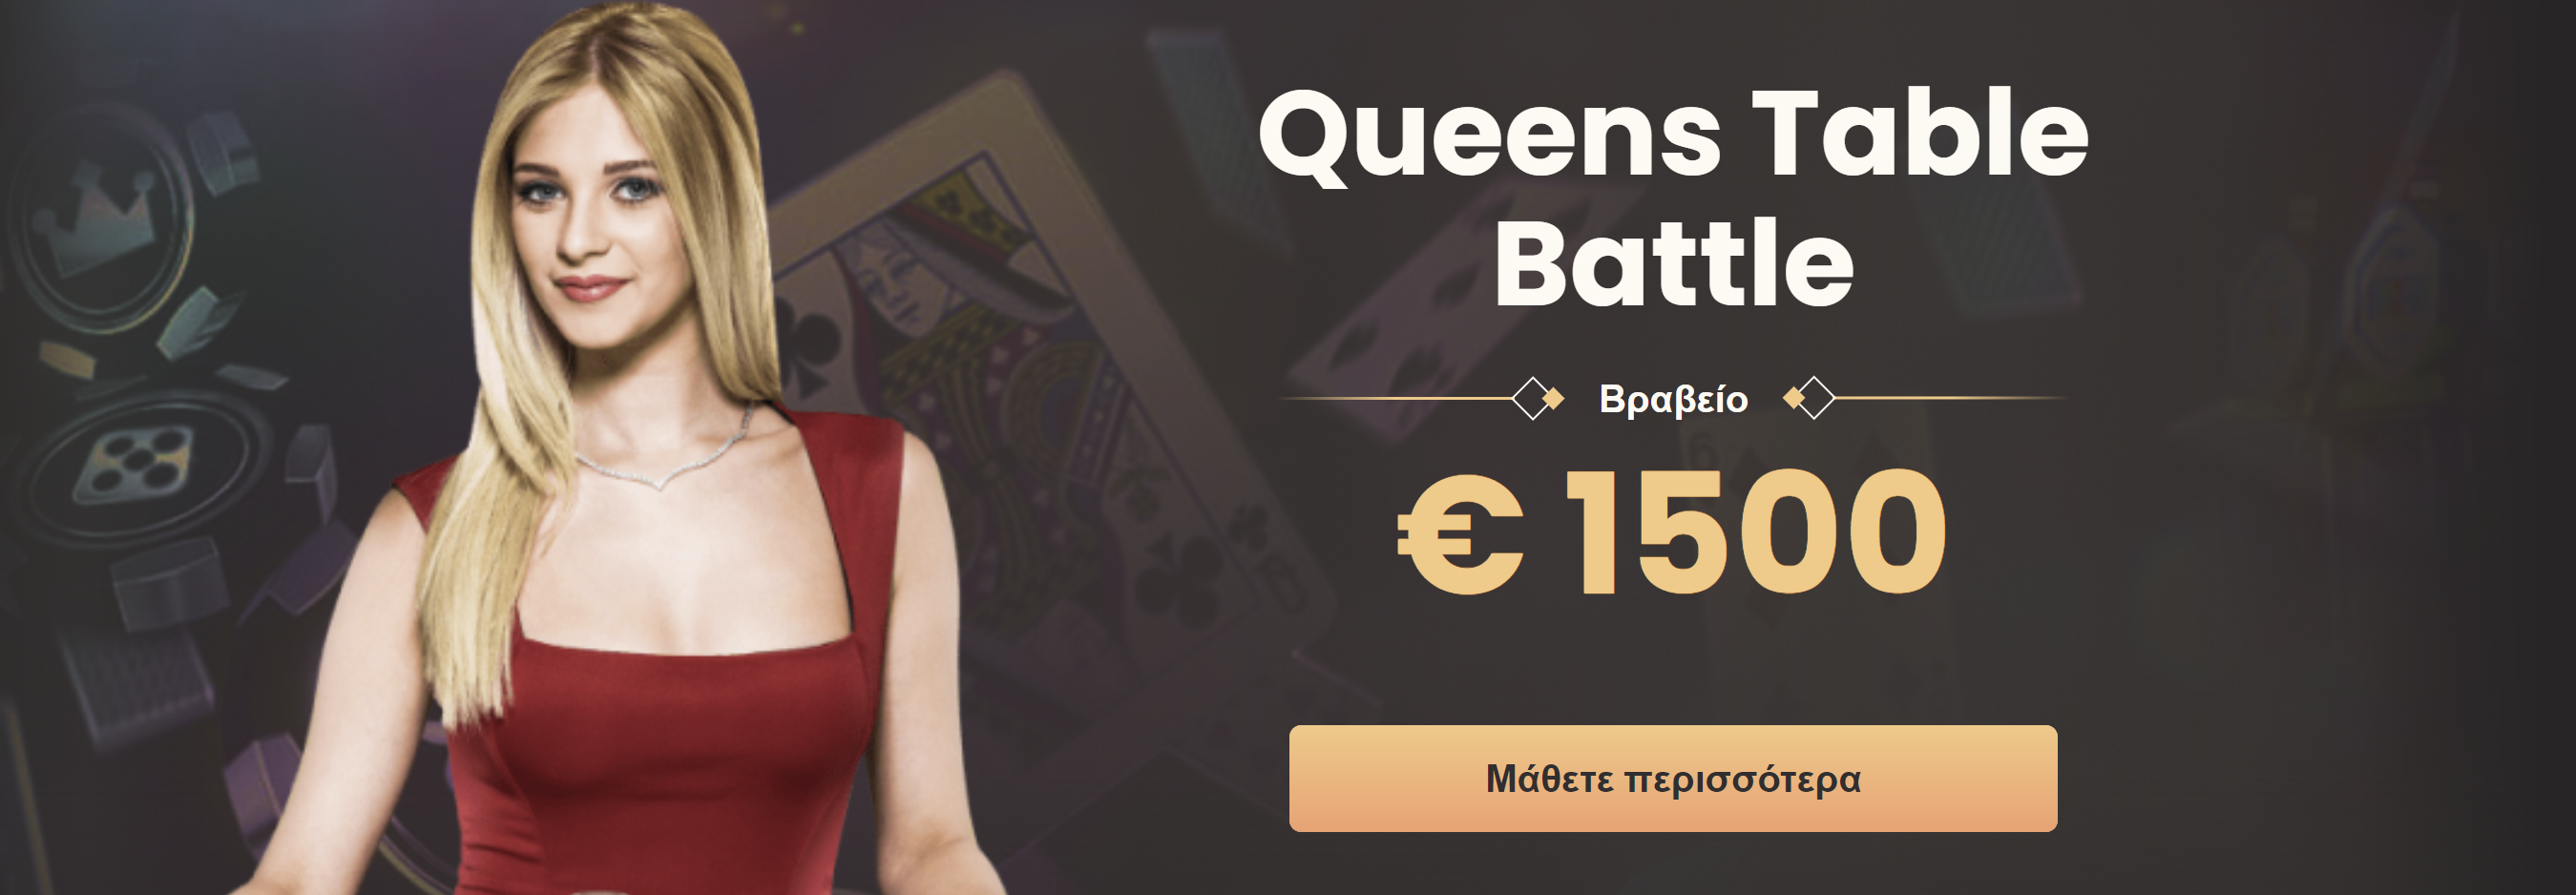 Queens Table Battle € 1500